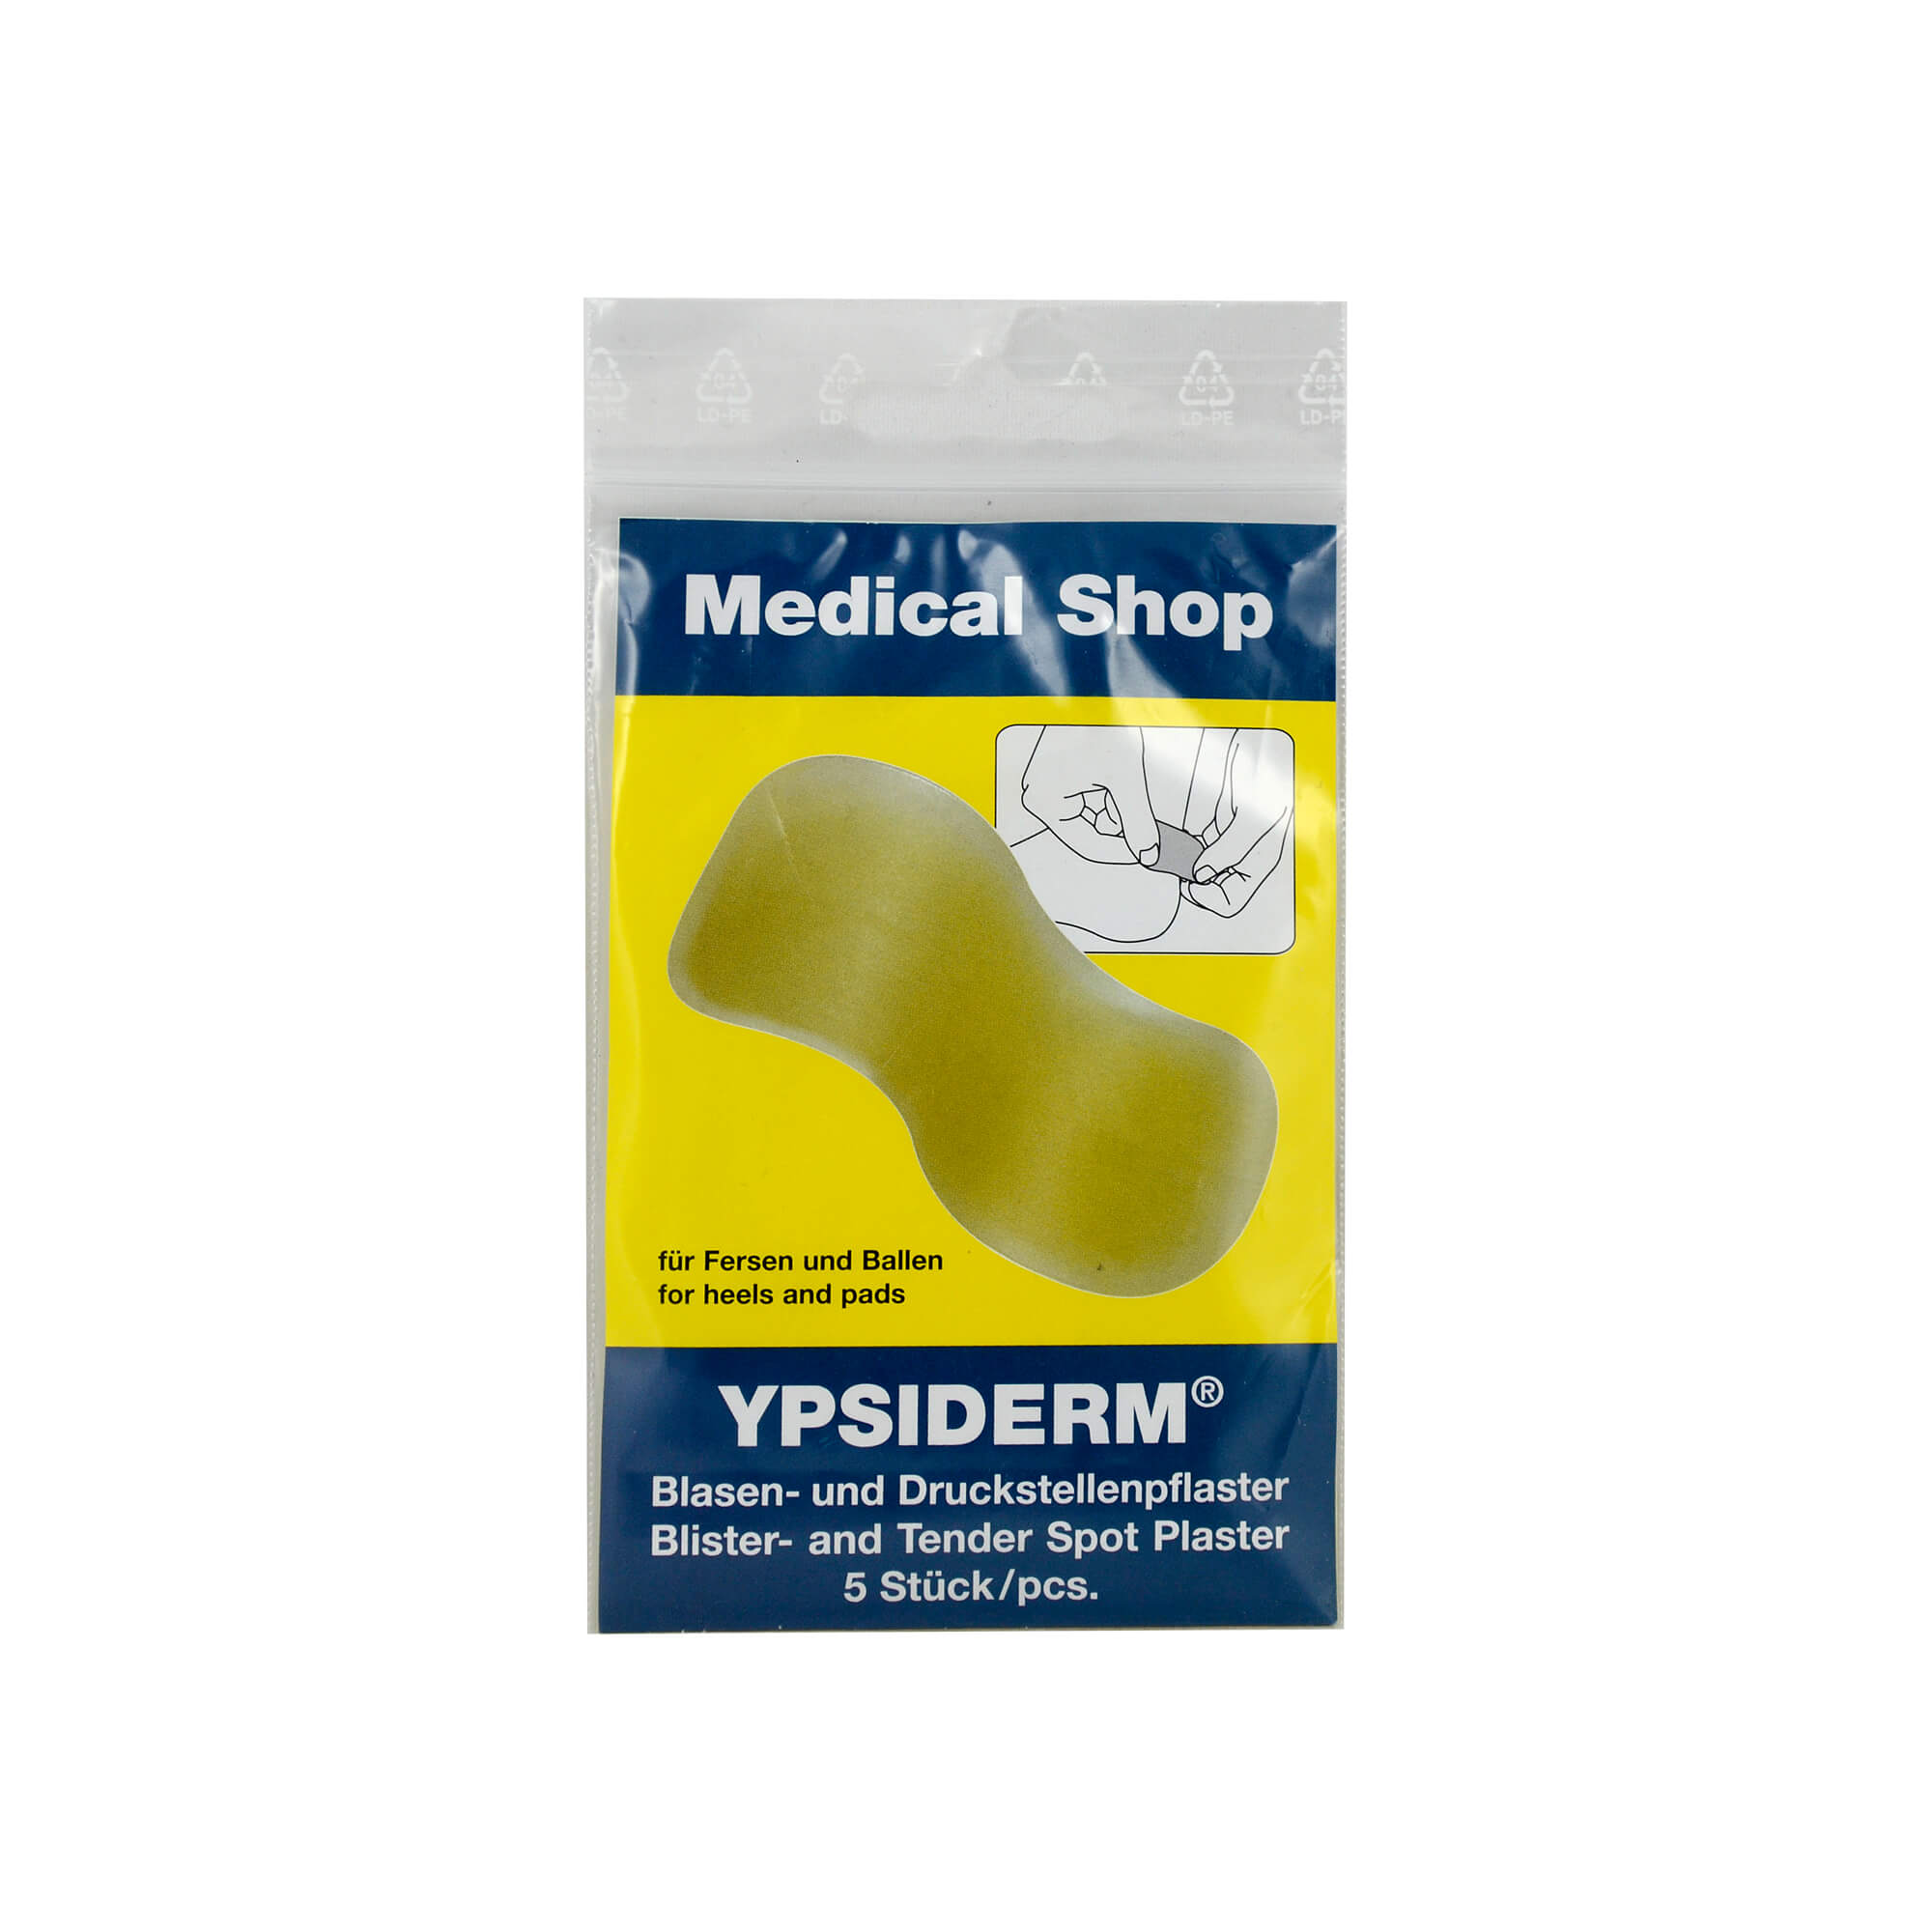 Gebrauchsfertiges Gelpflaster zur Vorbeugung und Behandlung von Blasen und Druckstellen.